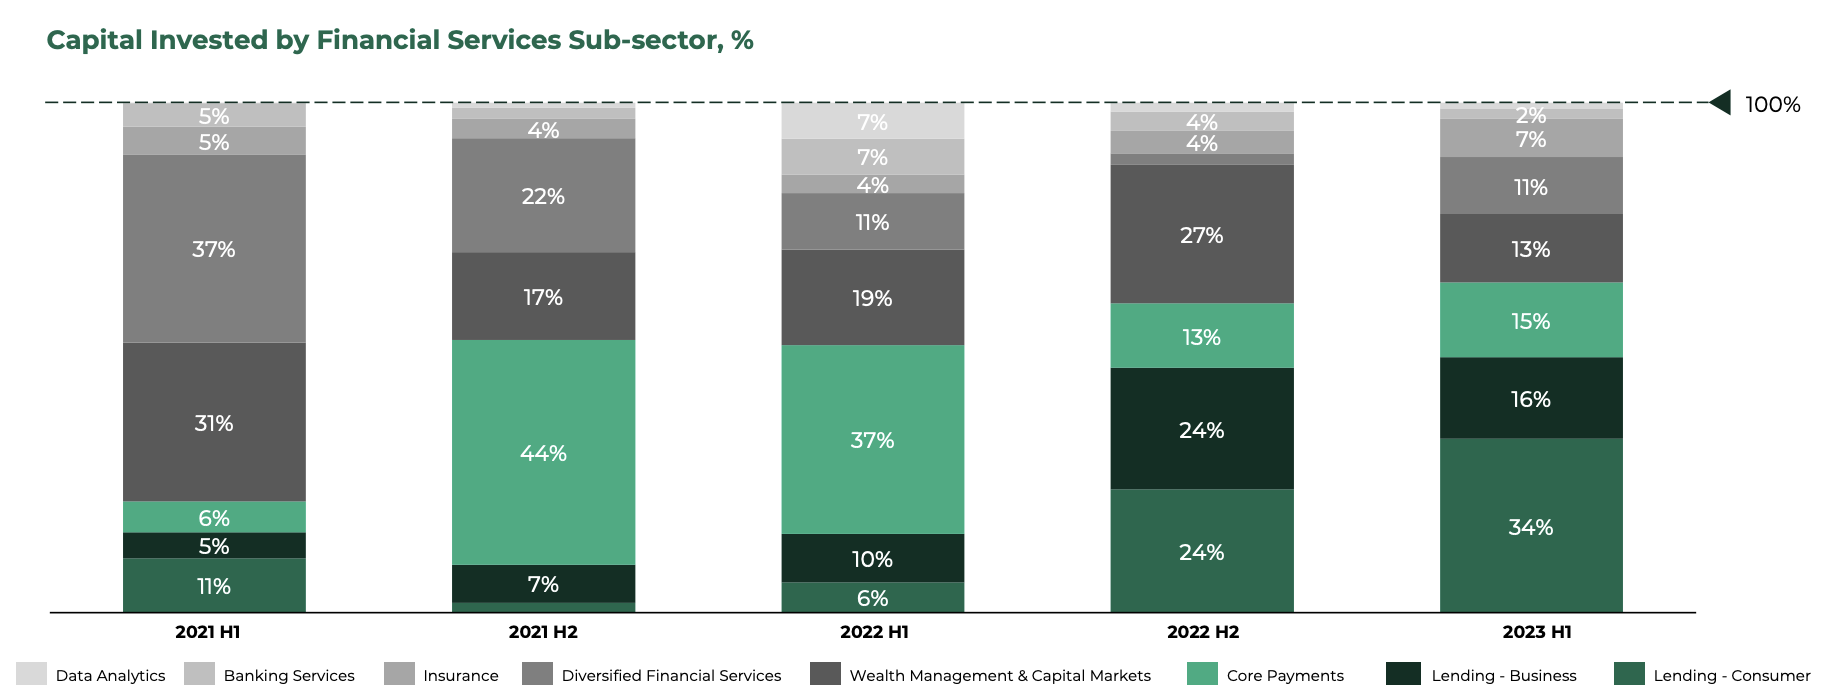 Capital investi par sous-secteur des services financiers, %, Source : Southeast Asia Tech Investment 2023 S1, Cento Ventures, décembre 2023